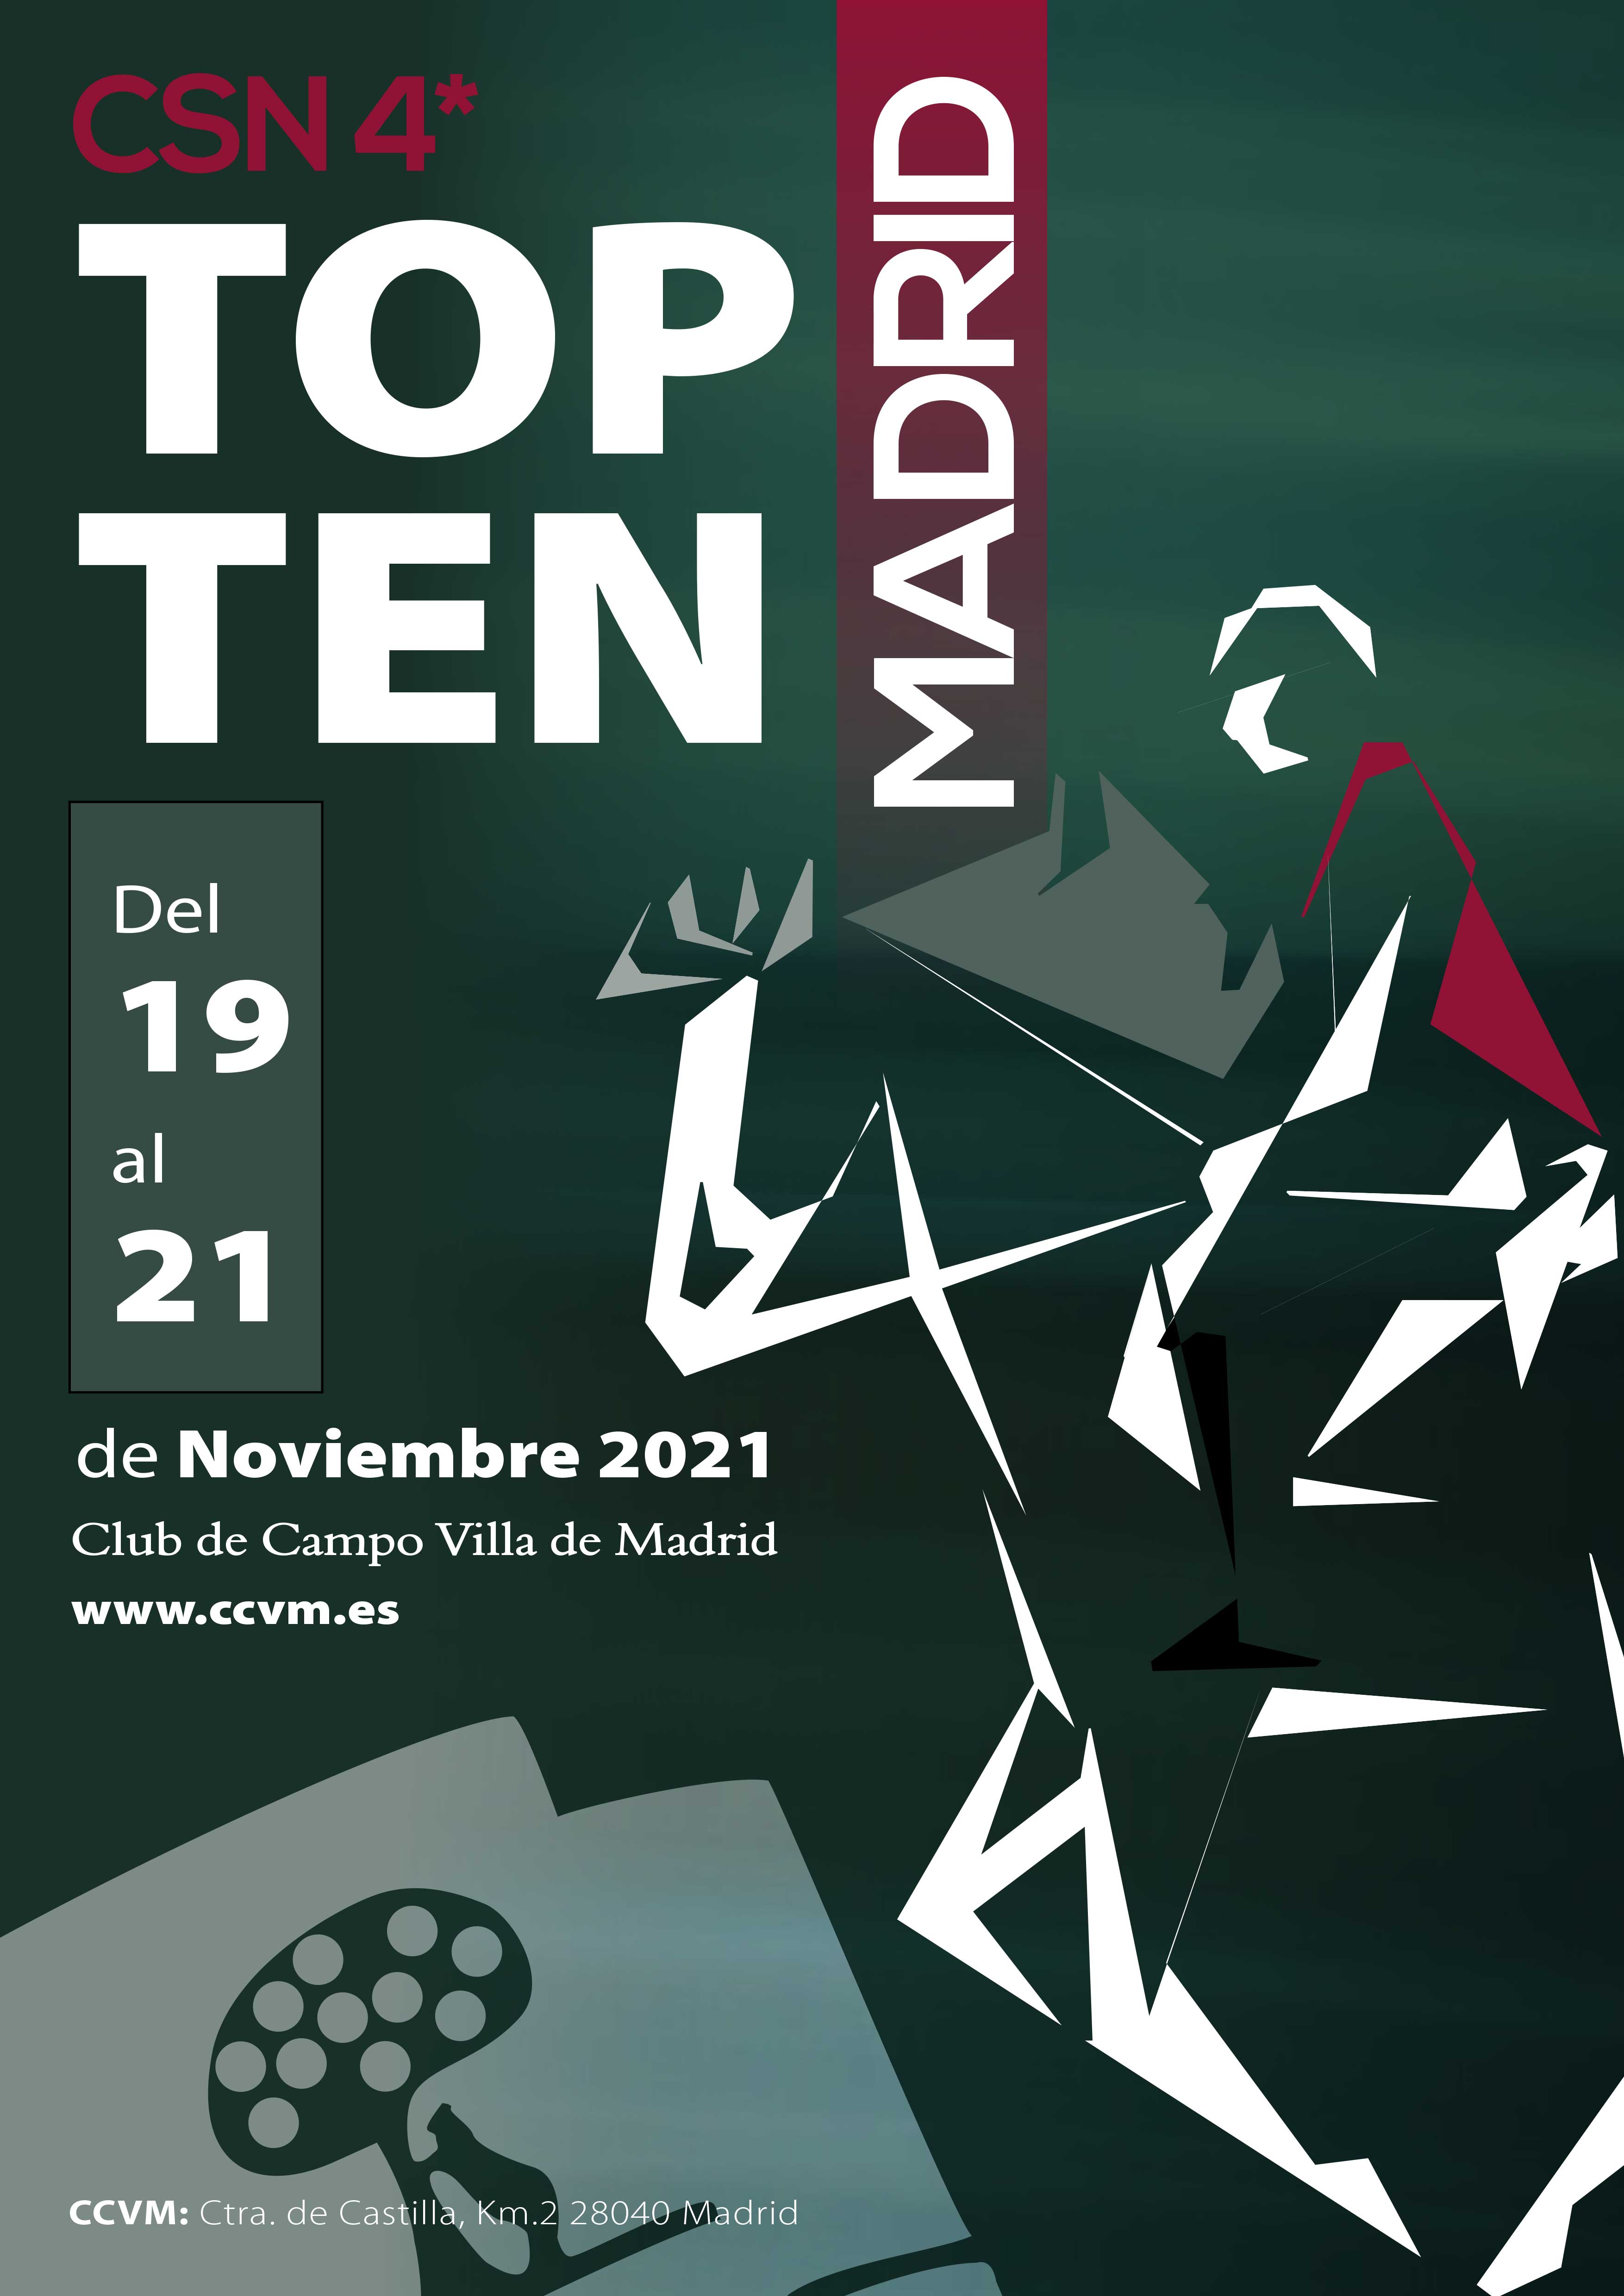 CSN 4* Madrid Top Ten 2021.